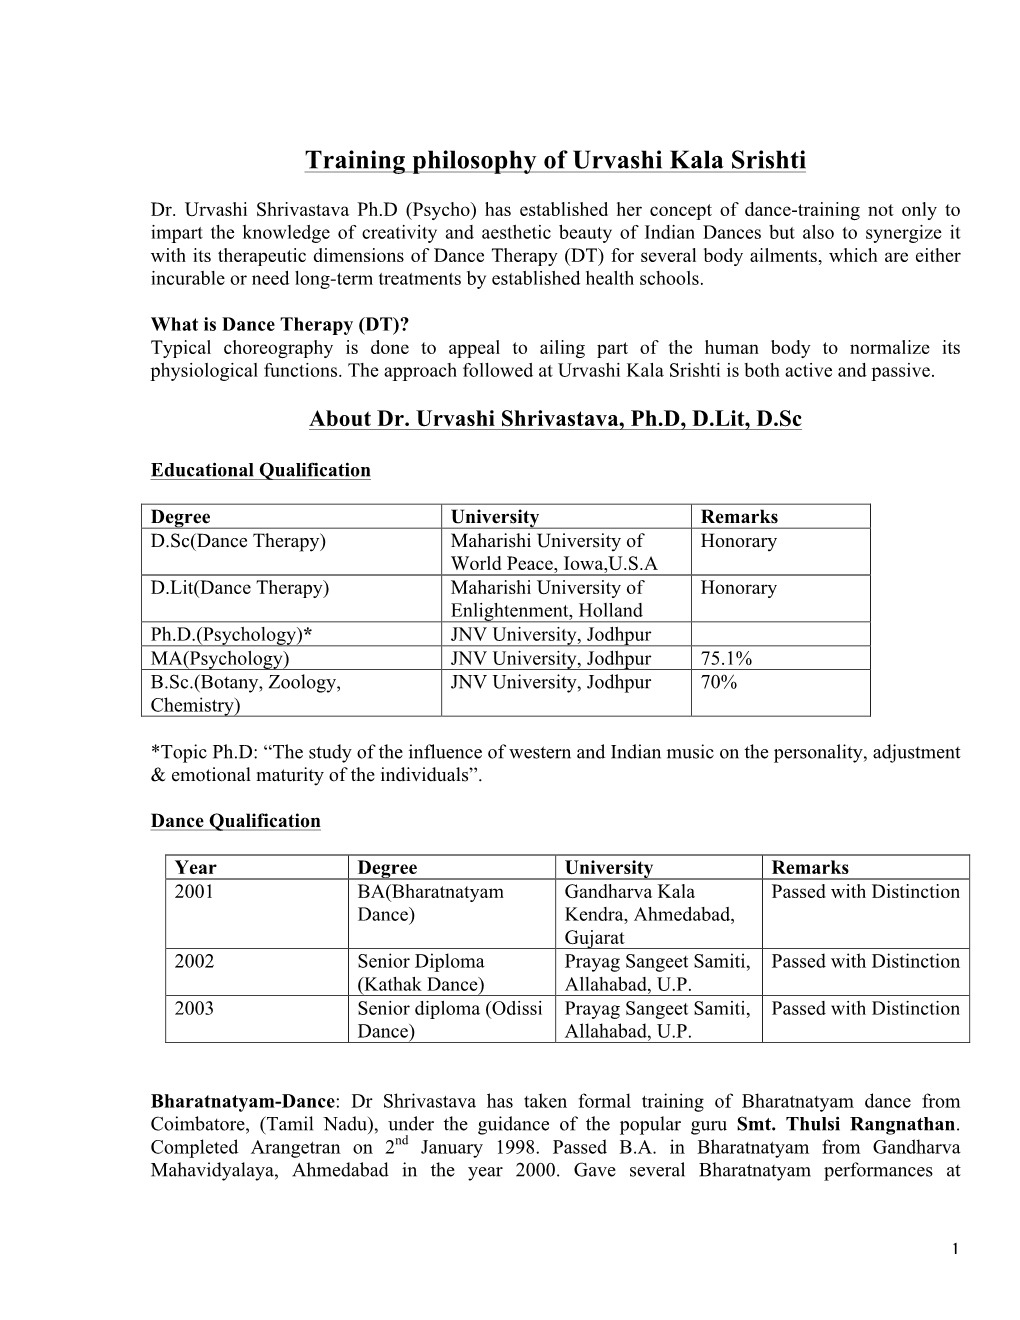 Training Philosophy of Urvashi Kala Srishti